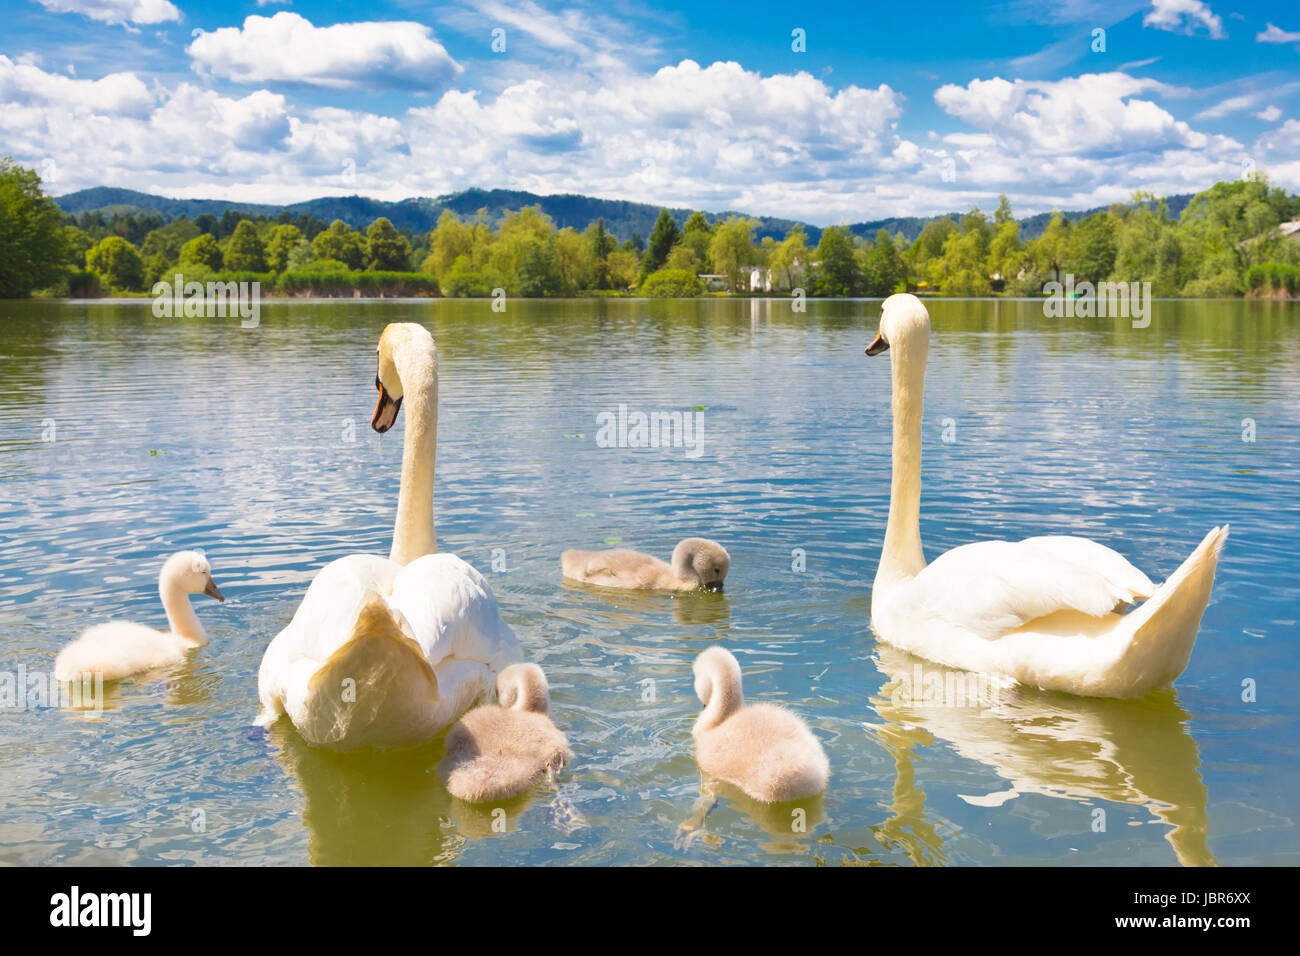 Schwan Familie schwimmen im Teich Koseze oder Martinek Teich oder See  Koseze ist einen künstlichen Teich am Rande von Ljubljana, die Hauptstadt  von Slowenien Stockfotografie - Alamy